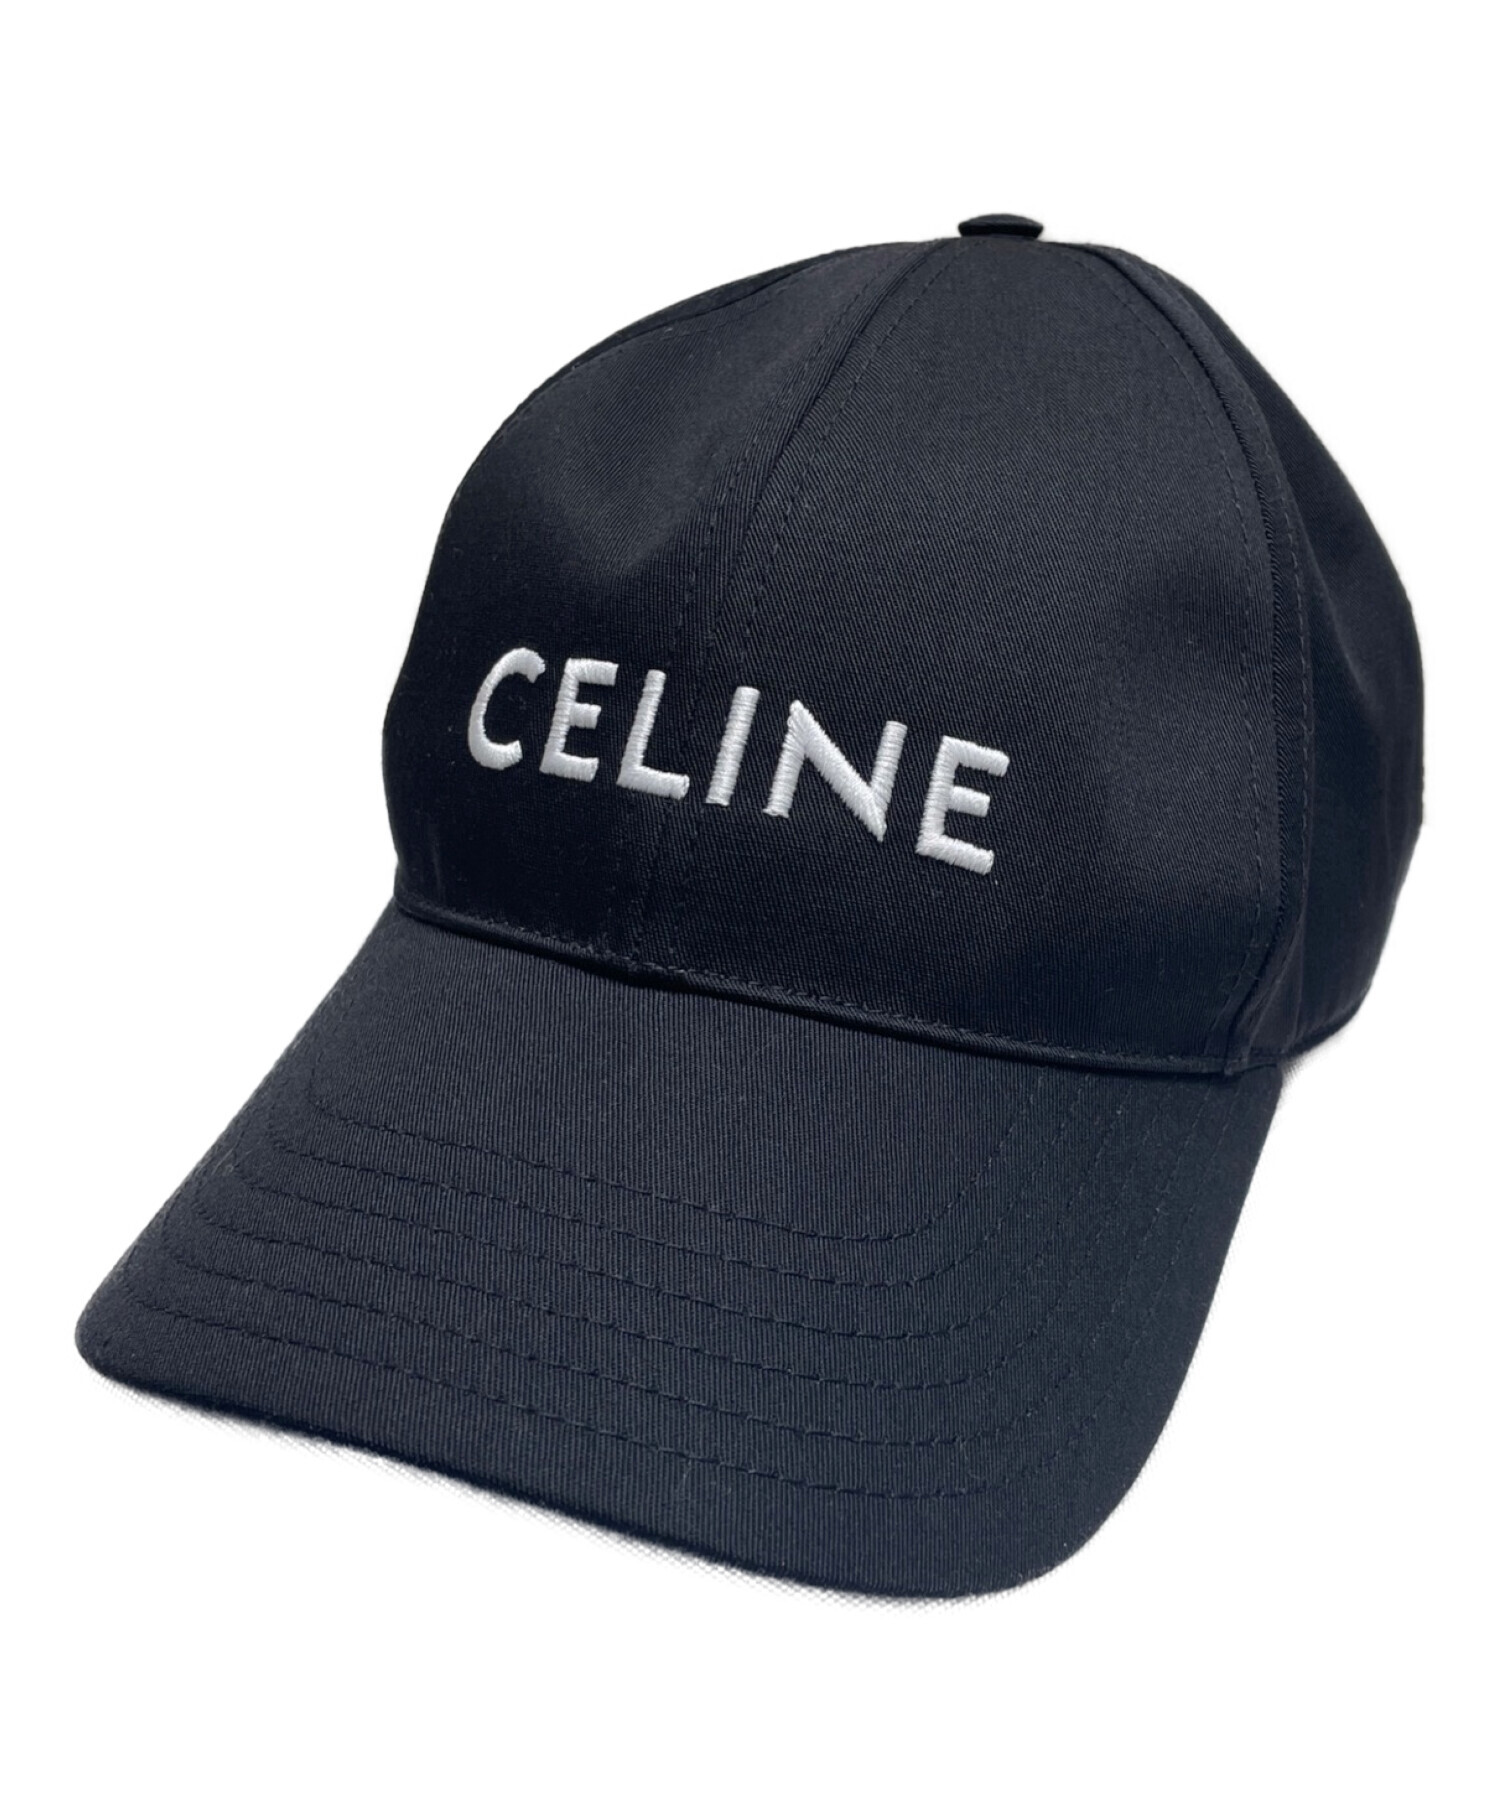 CELINE (セリーヌ) ロゴベースボールキャップ ブラック サイズ:L